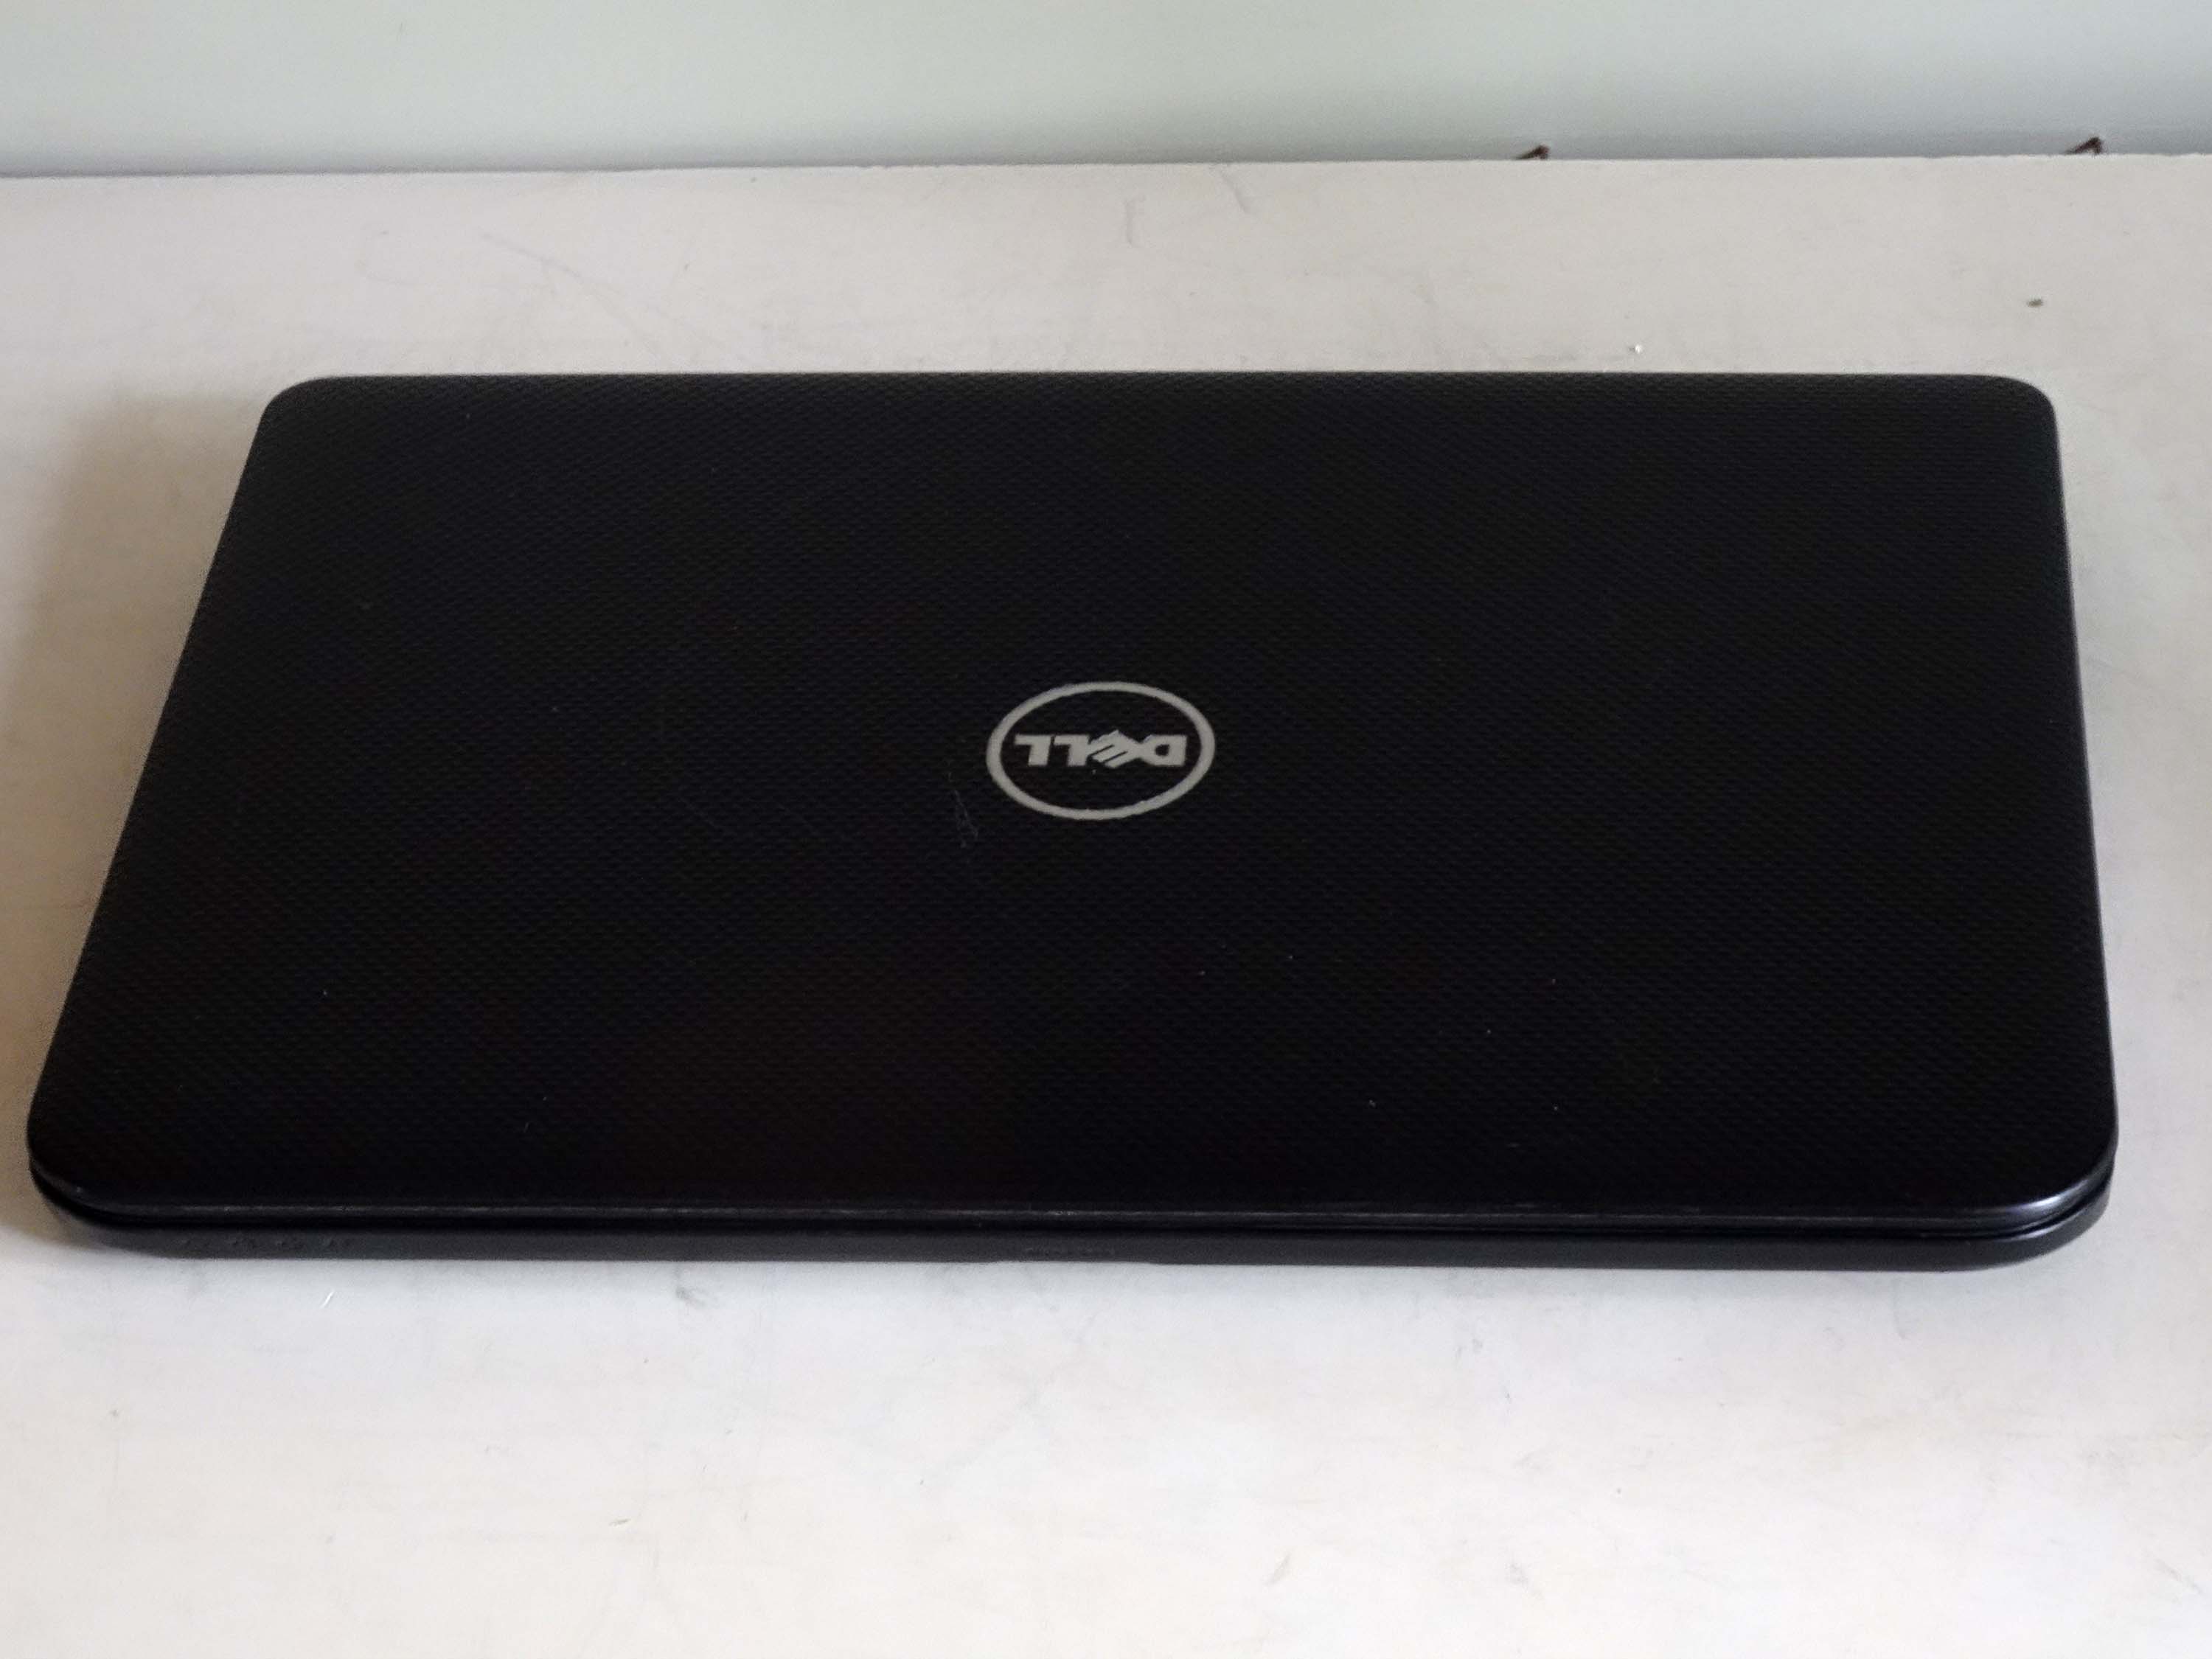 Laptop Dell Inspiron 3437 i5 cũ chính hãng giá rẻ tại Tp Kun Tum